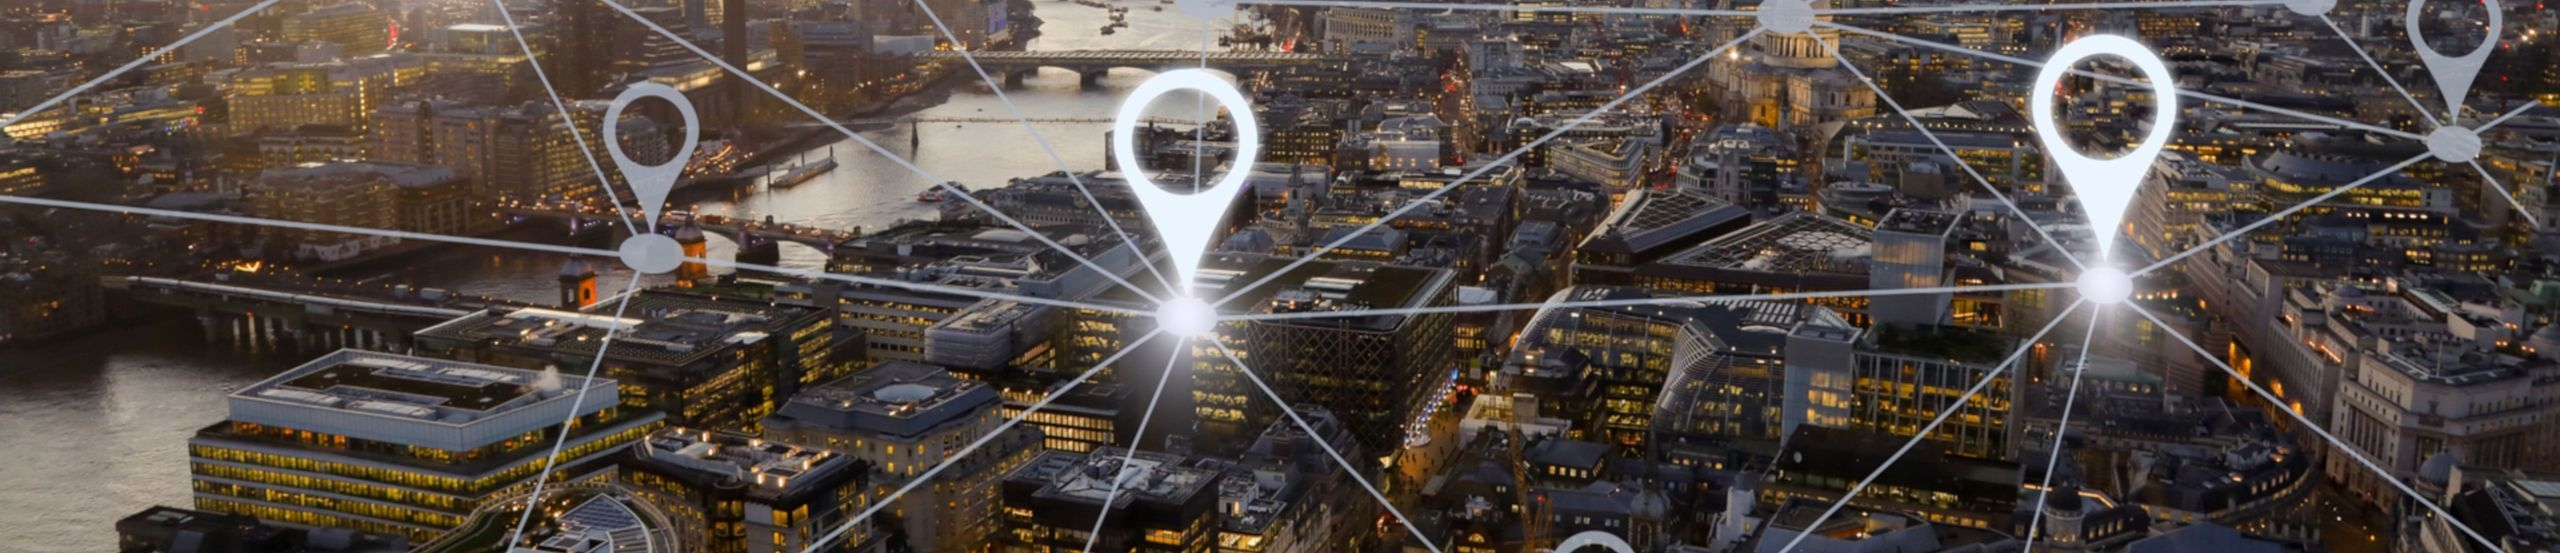 Symbolbild zur Vernetzung einer Stadt via Narrowband-IoT